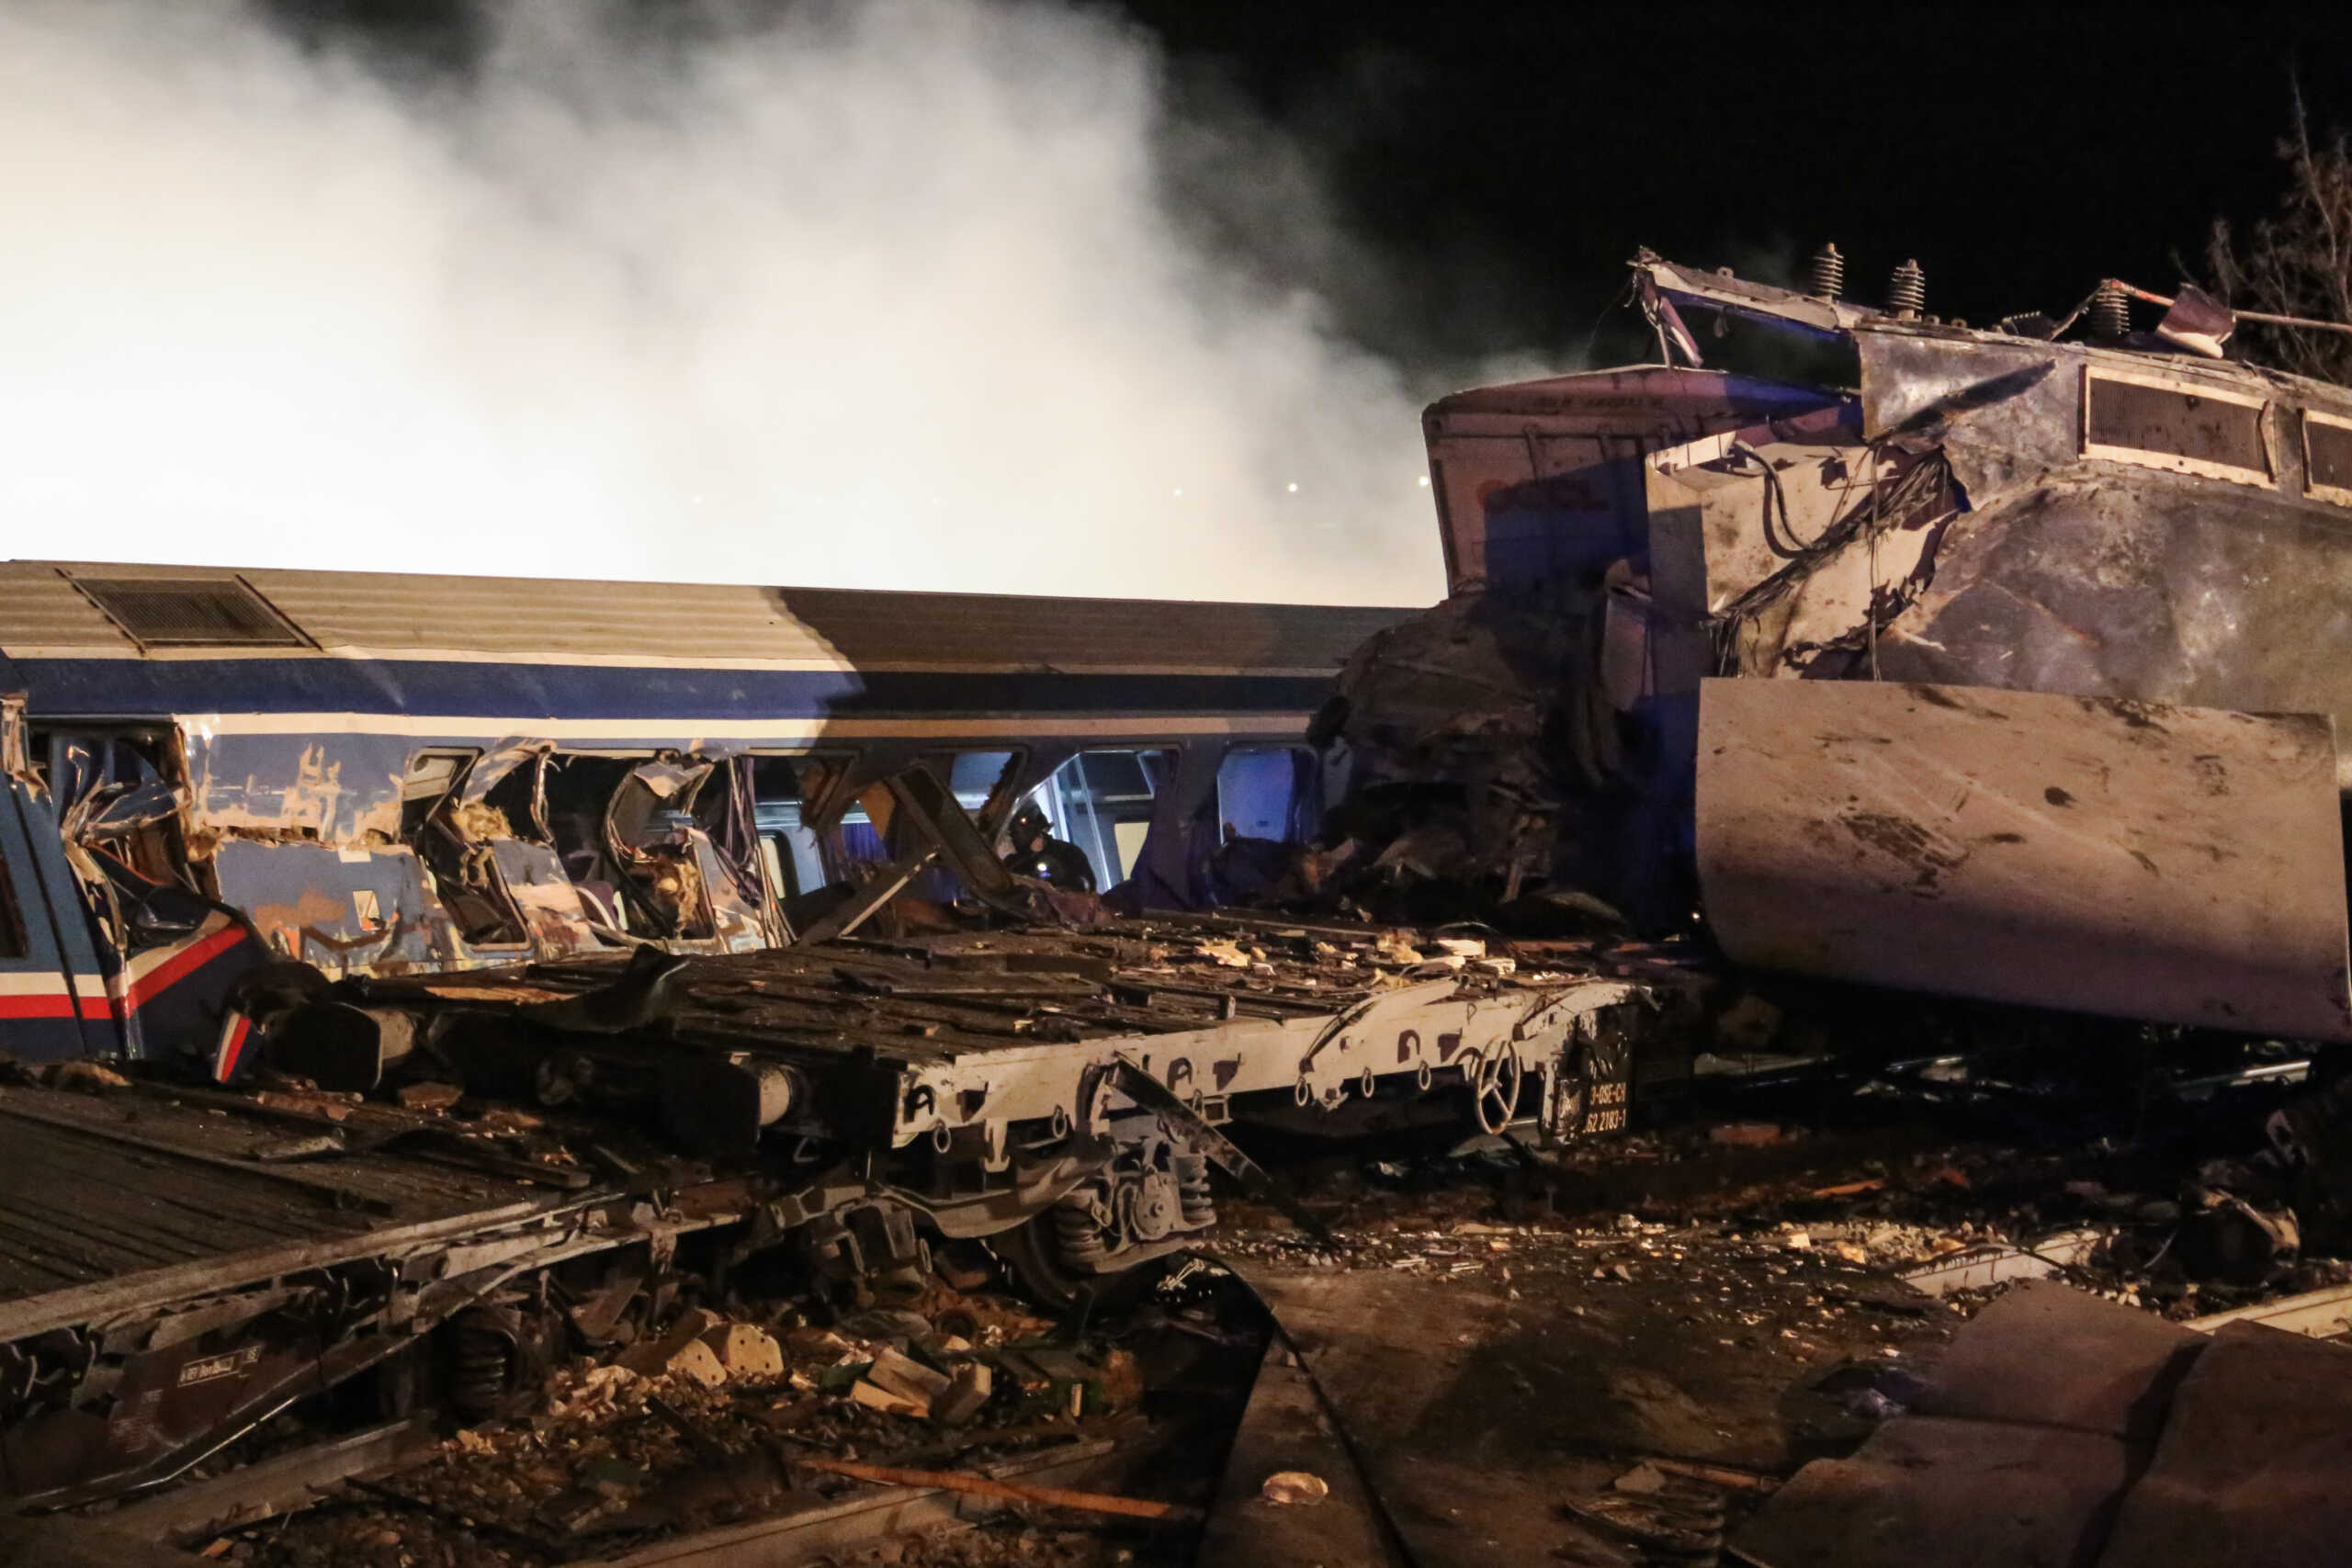 Πόρισμα ΝΔ για την τραγωδία στα Τέμπη: Εάν είχαν τηρηθεί οι κανόνες το δυστύχημα δεν θα είχε συμβεί – Καμία προσπάθεια συγκάλυψης